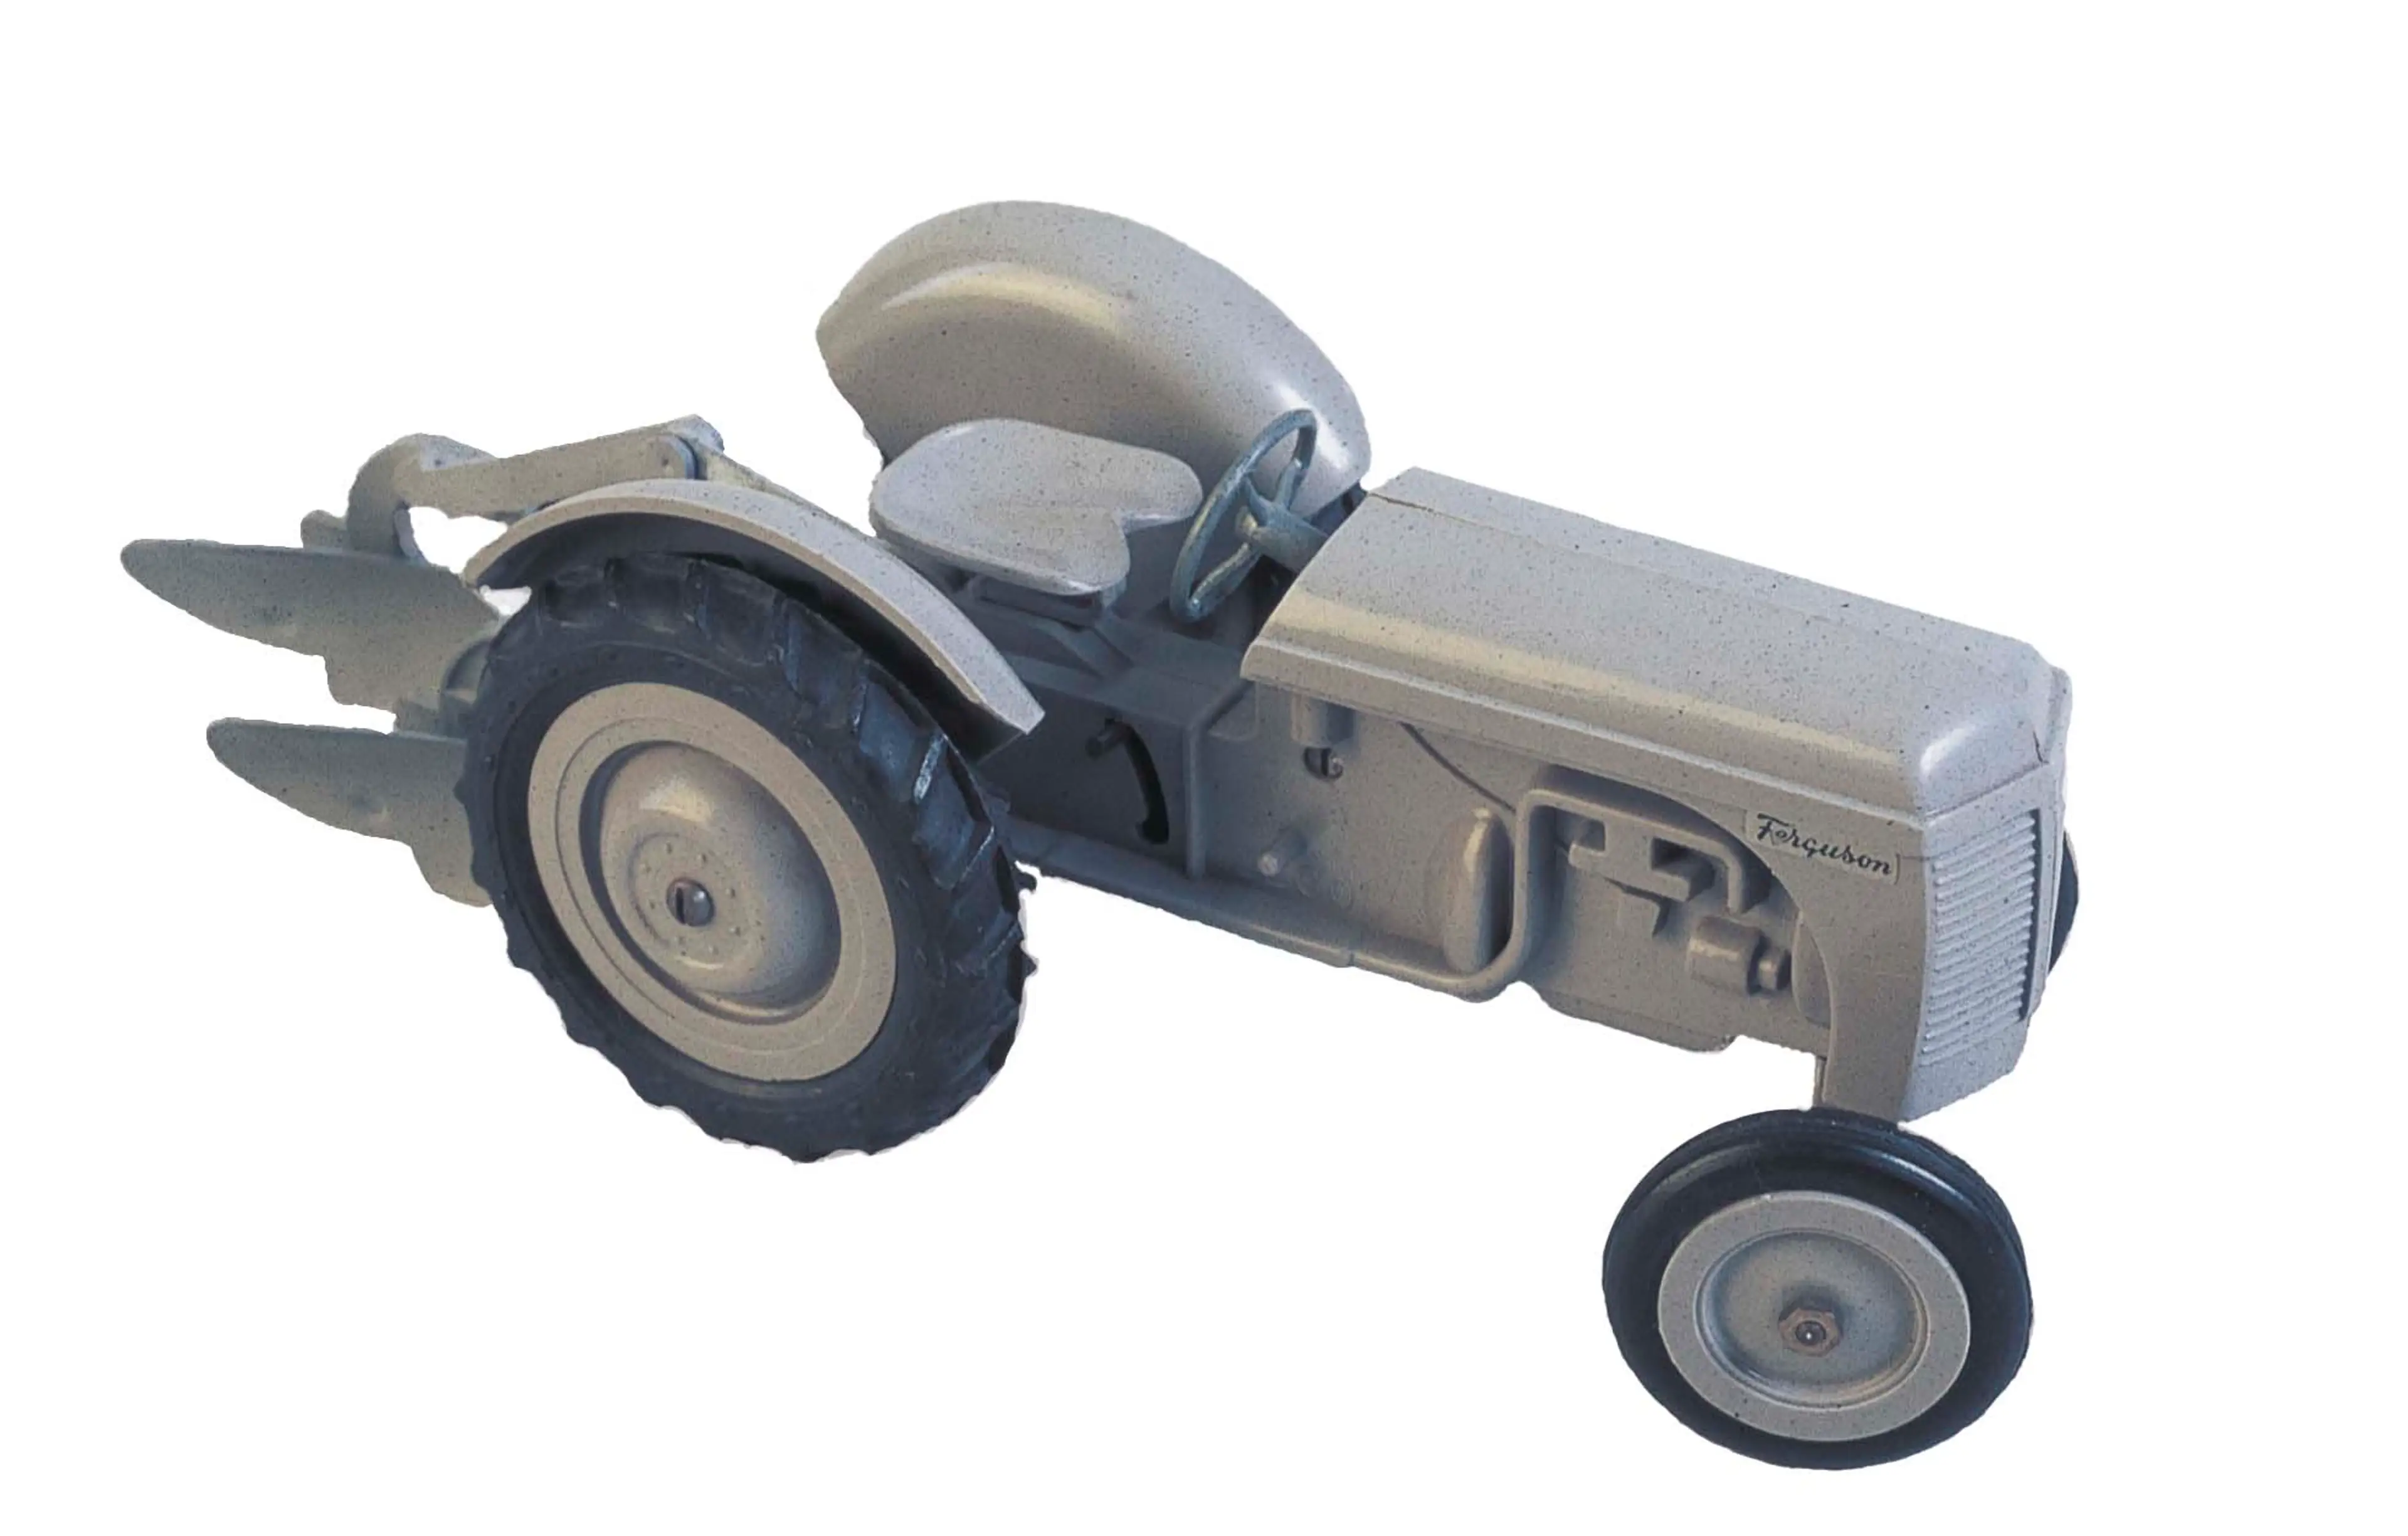 A grey LEGO Ferguson tractor